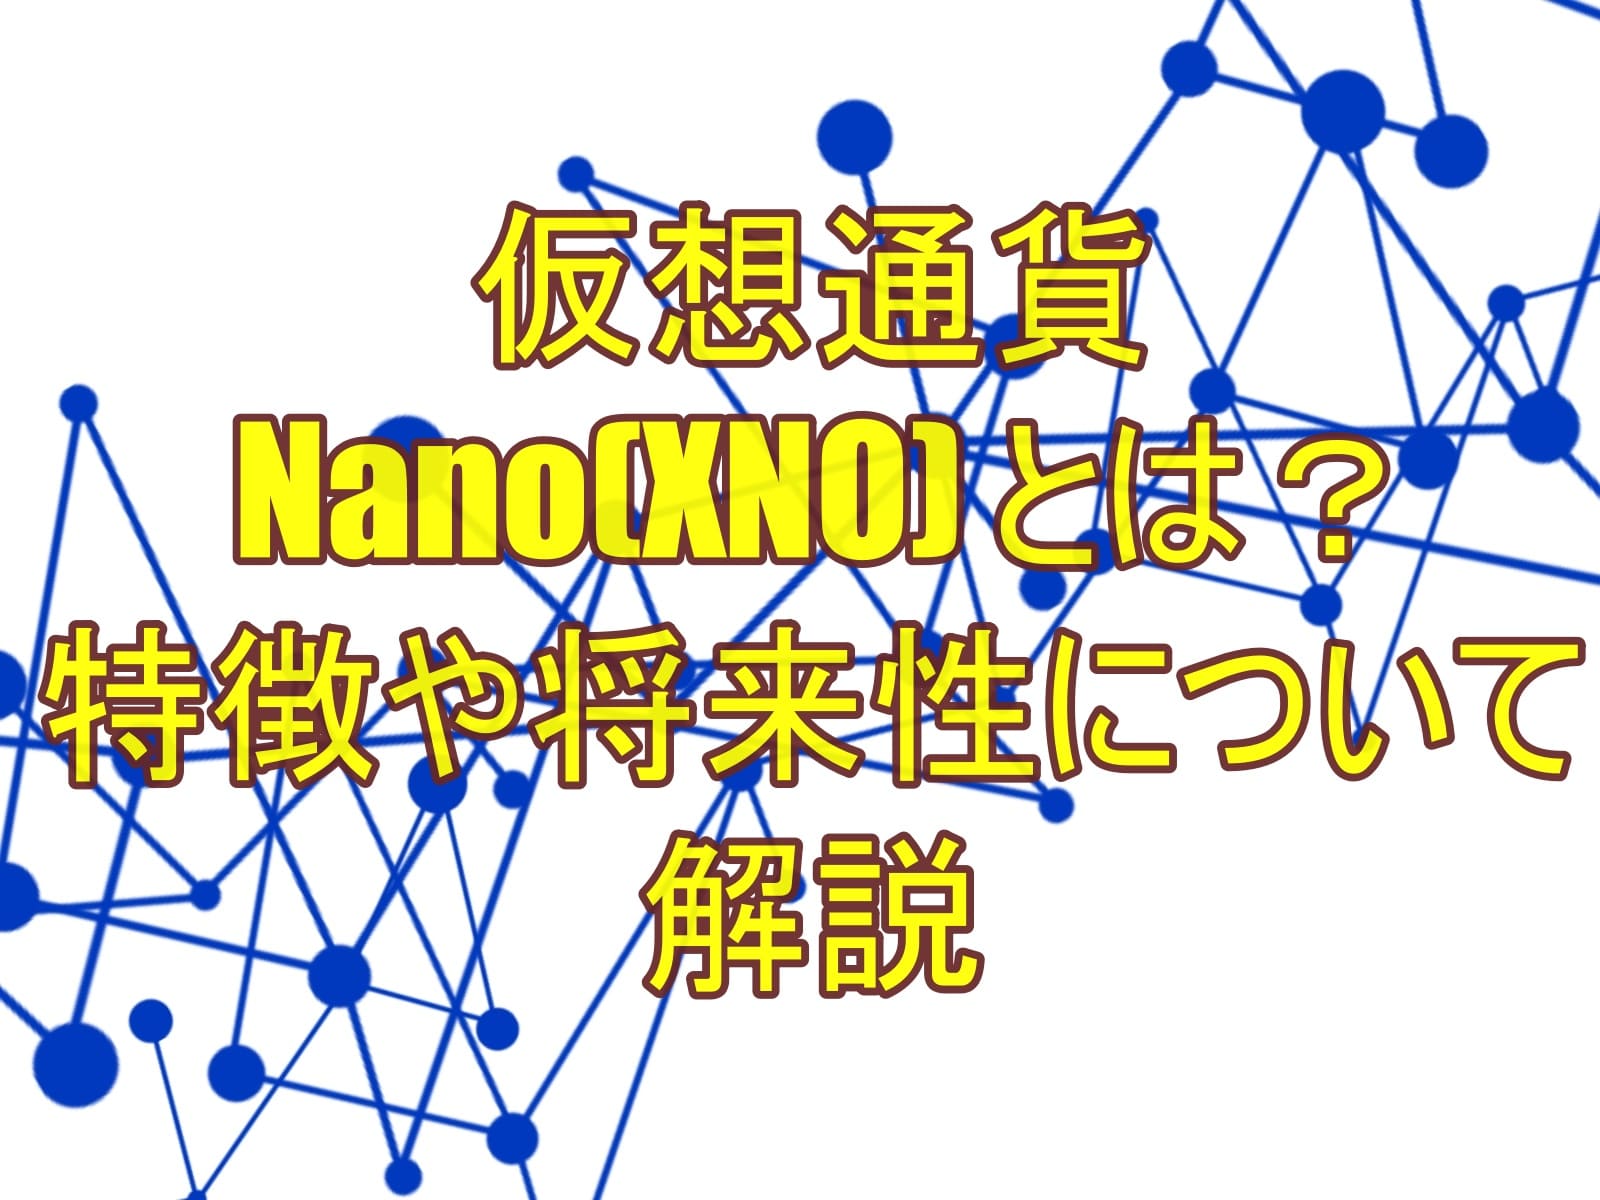 仮想通貨Nano(XNO) とは？特徴や将来性について解説